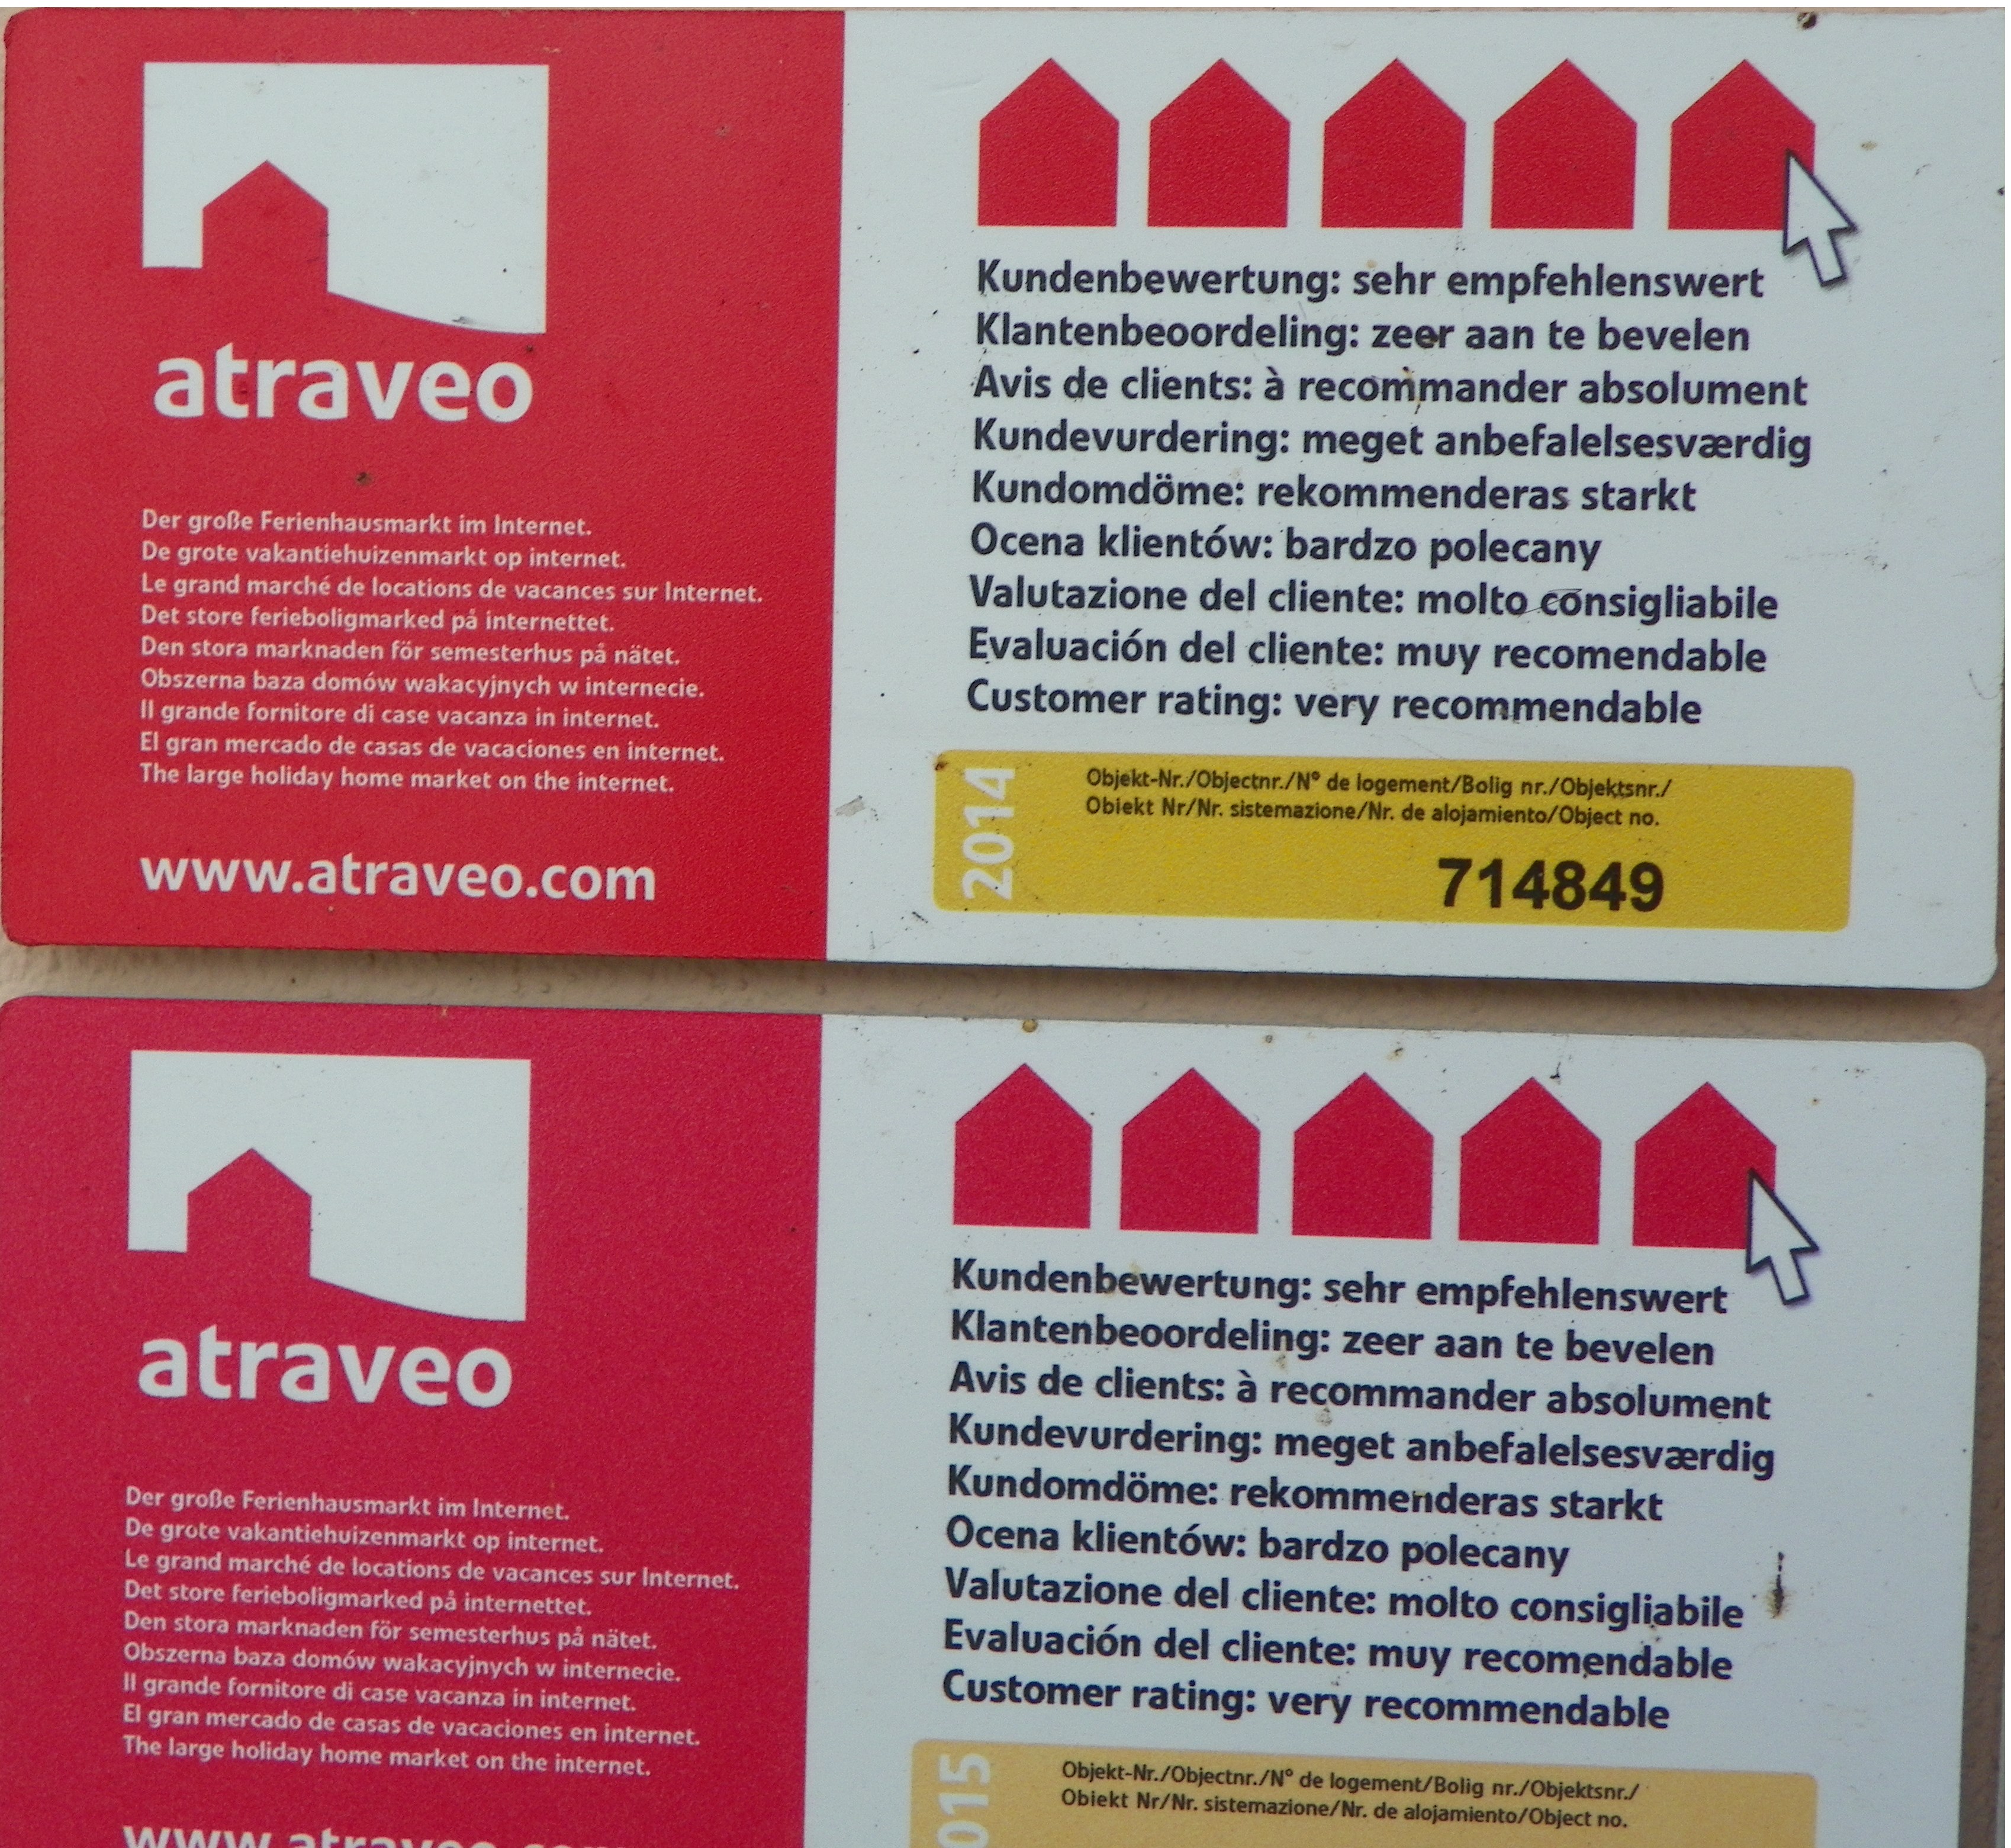 Atraveo Kundenbewertung 2014 und 2015